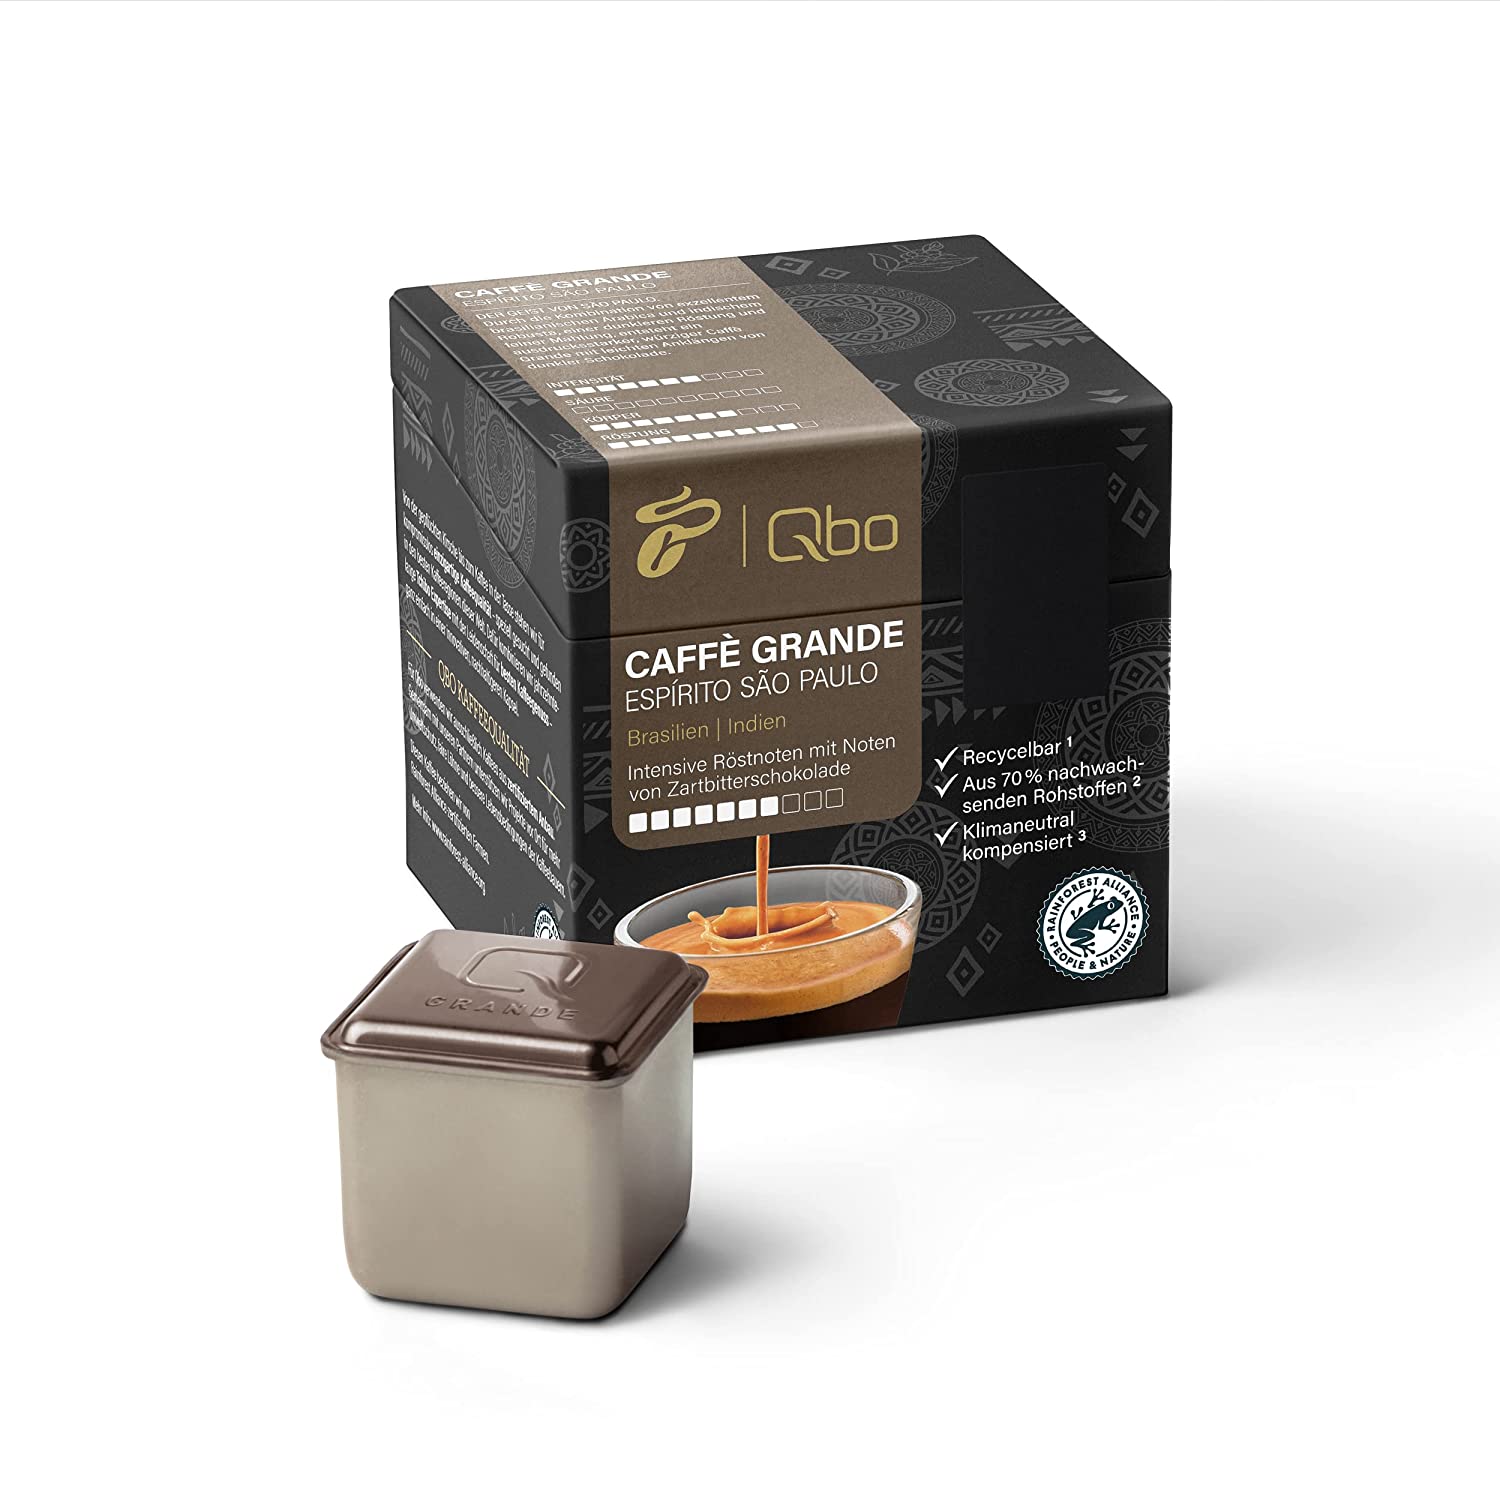 Tchibo Qbo Caffè Grande Espírito São Paulo Premium Kaffeekapseln, 8 Stück (Caffè Grande, Intensität 7/10, hocharomatisch), nachhaltig, aus 70% nachwachsenden Rohstoffen & klimaneutral kompensiert